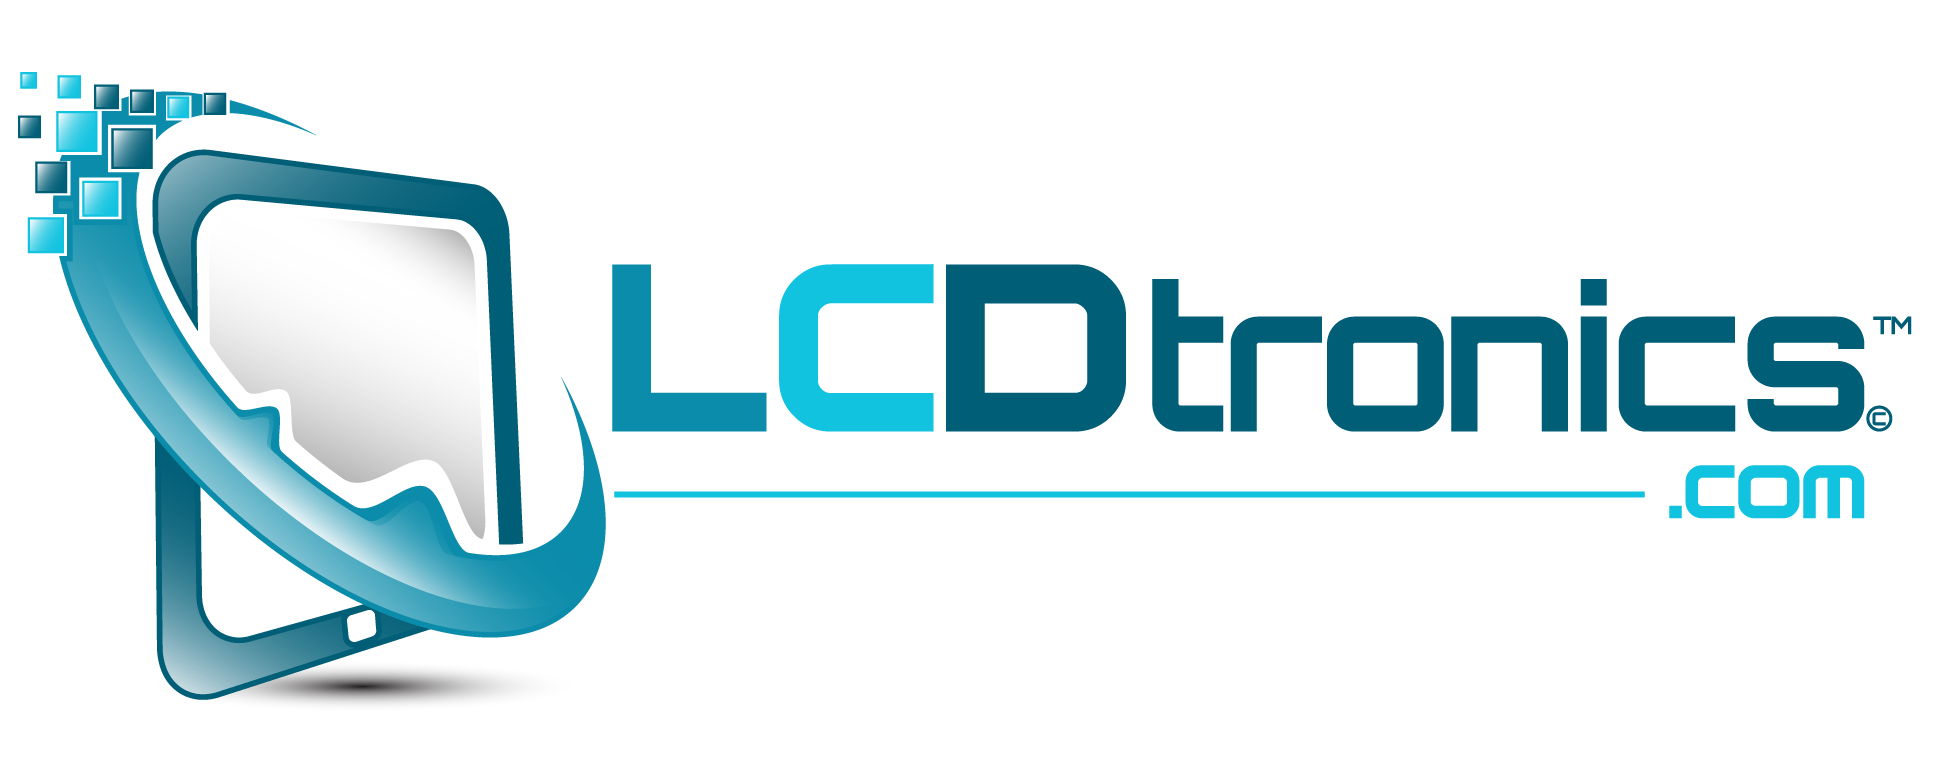 LCDtronics.com